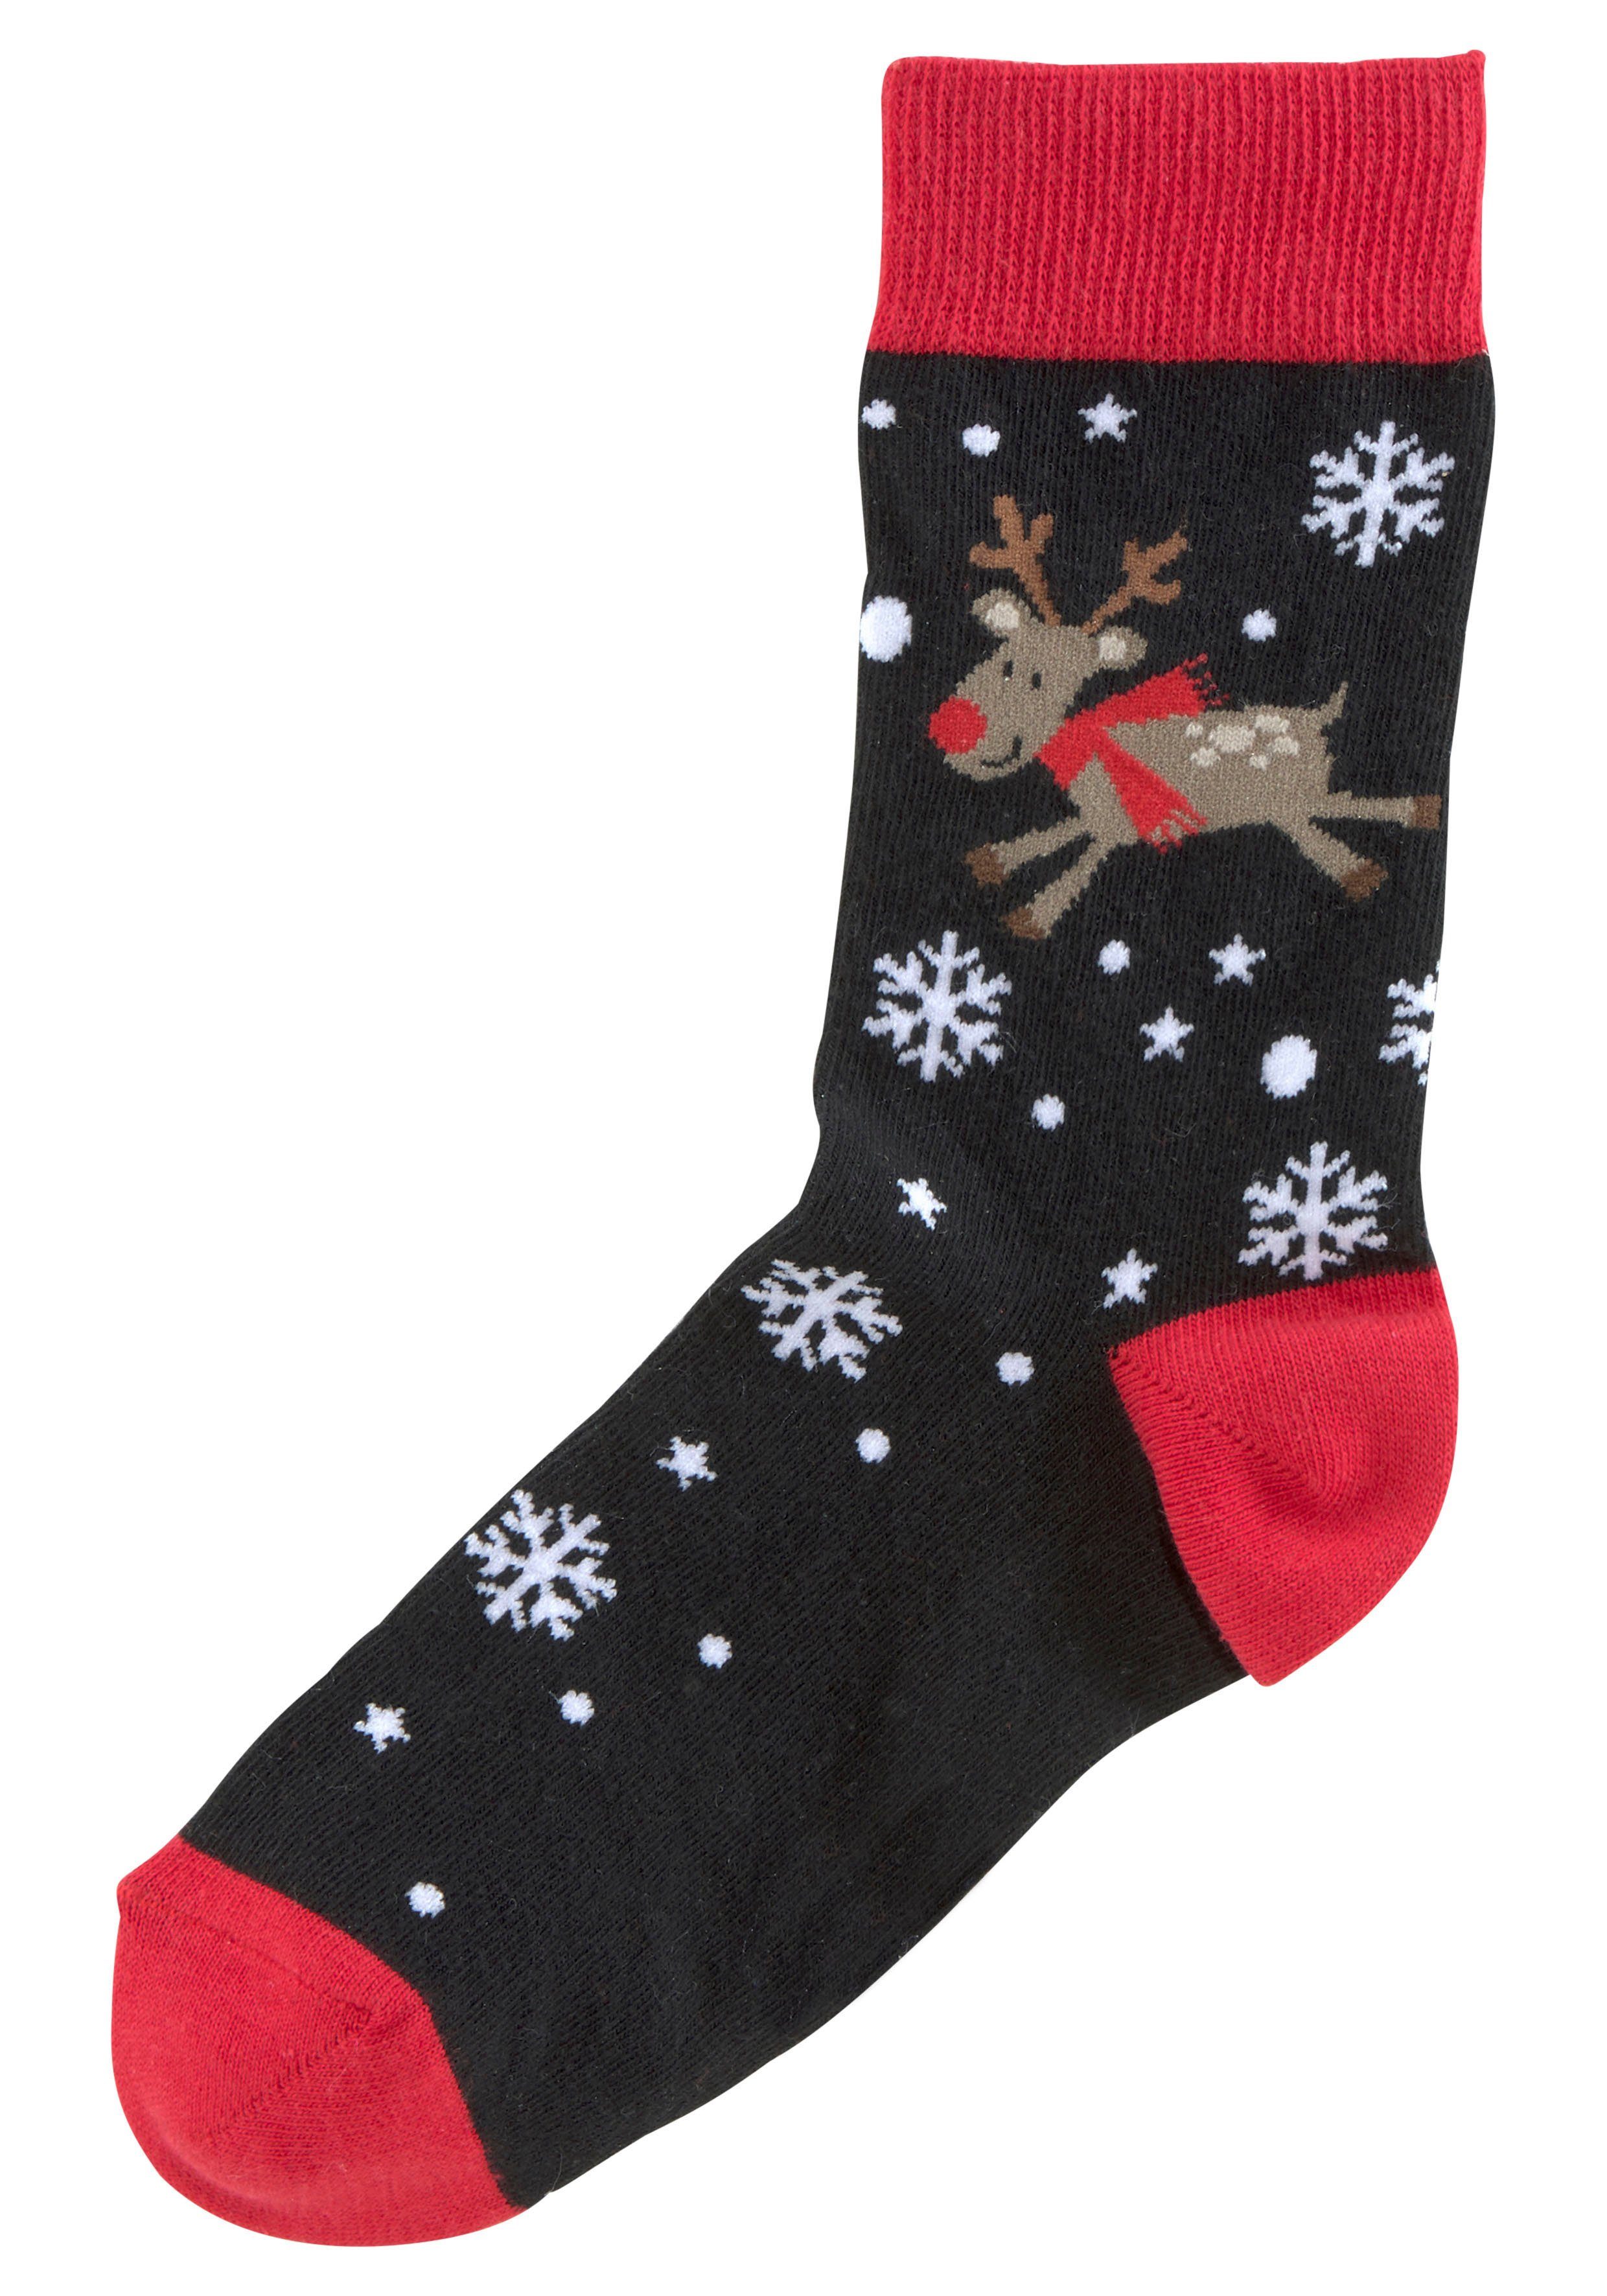 Socken lustigen (3-Paar) H.I.S Weihnachtsmotiven schwarz-rot-gemustert 3x mit